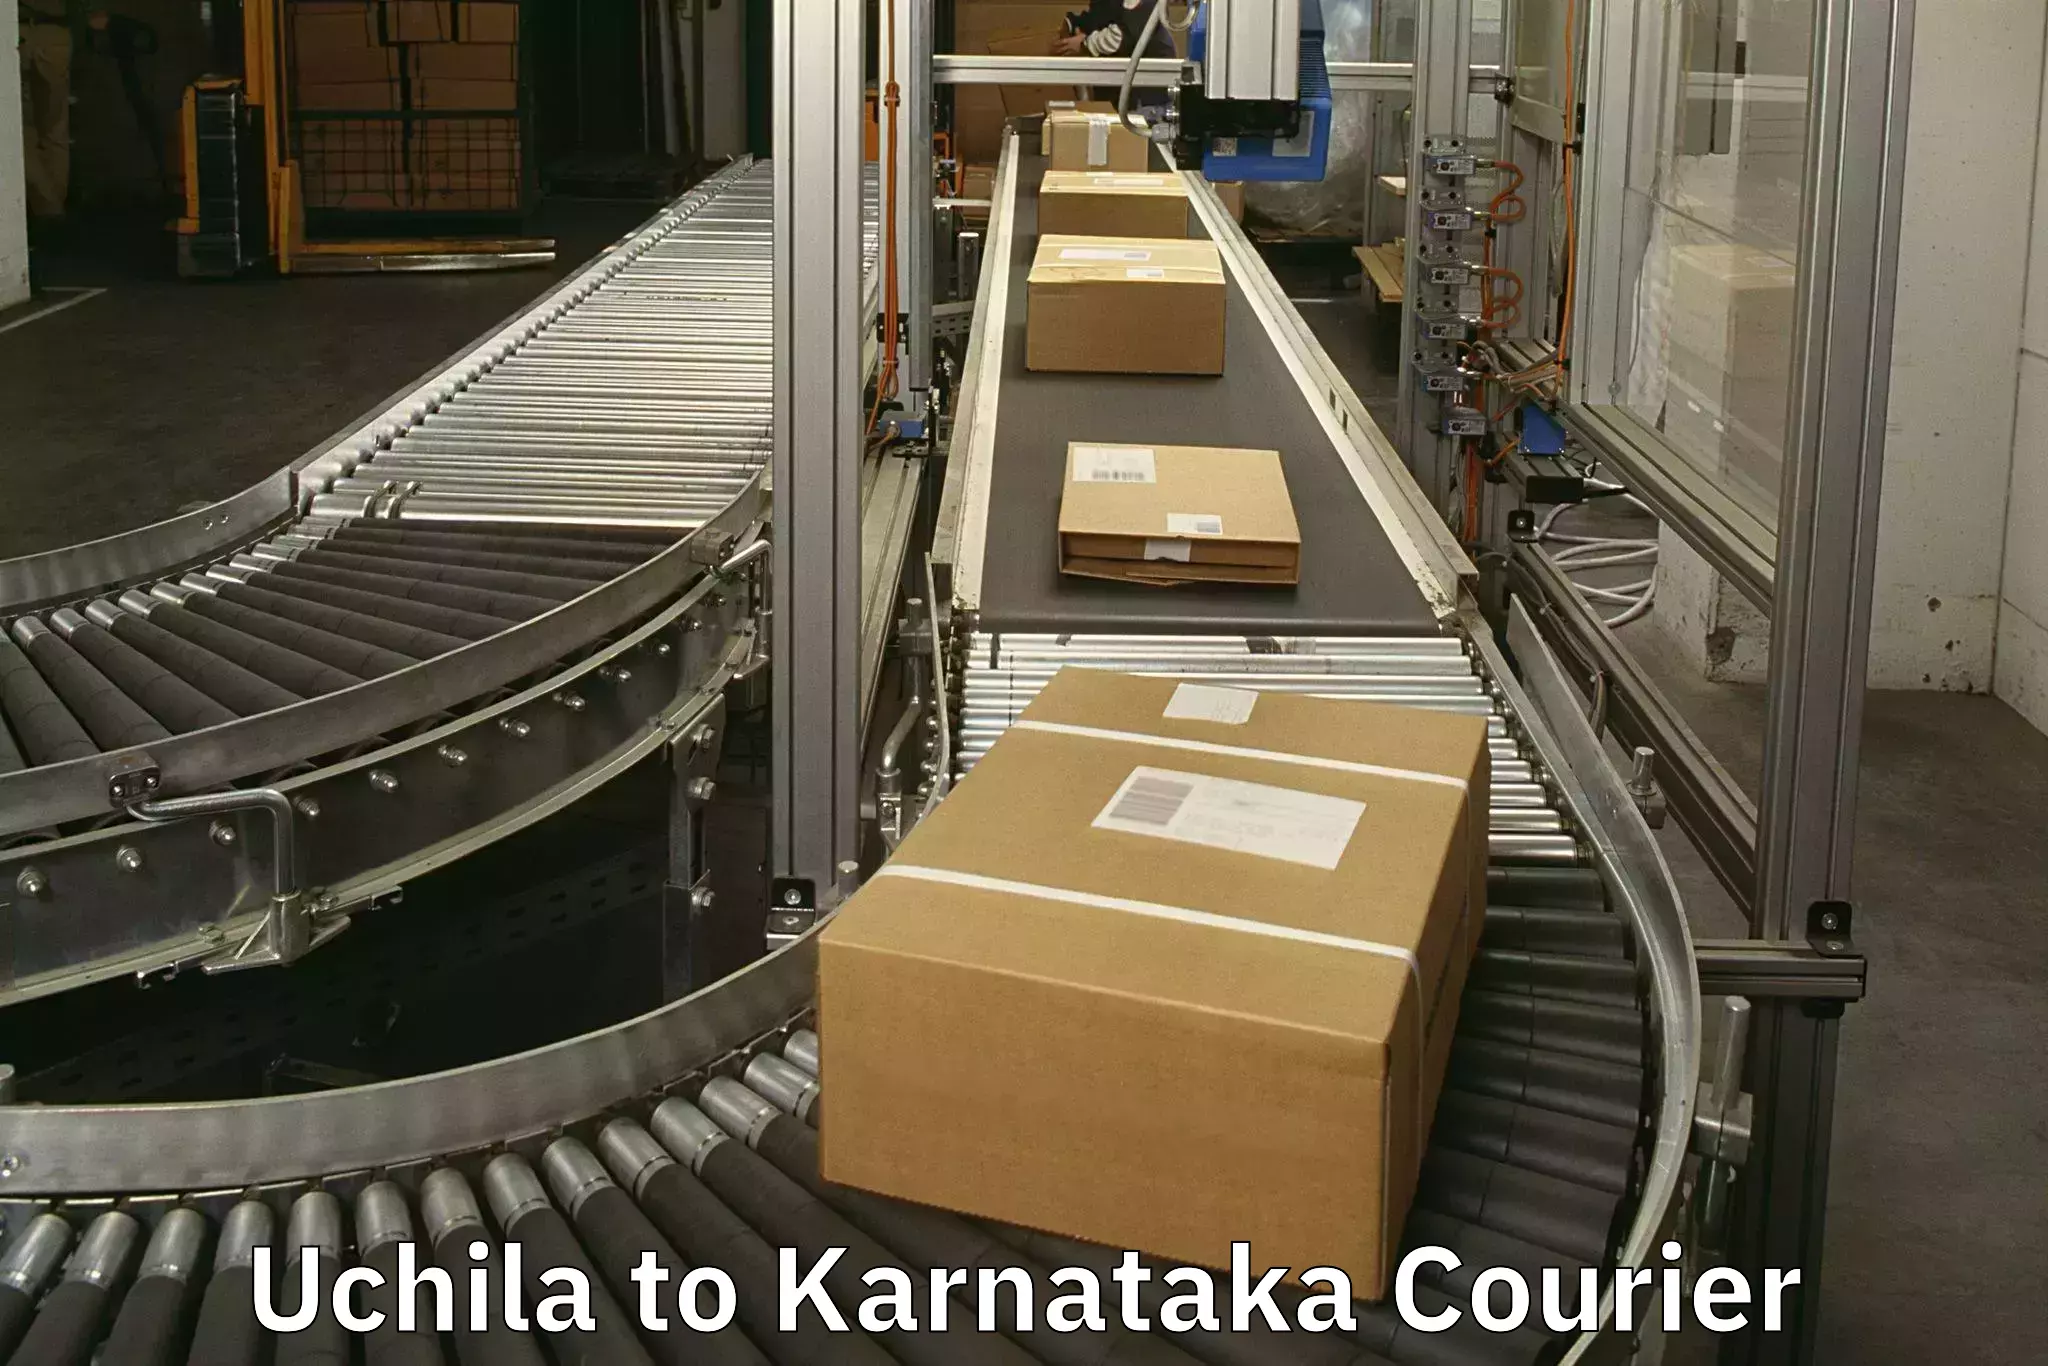 Luggage delivery system in Uchila to Karnataka